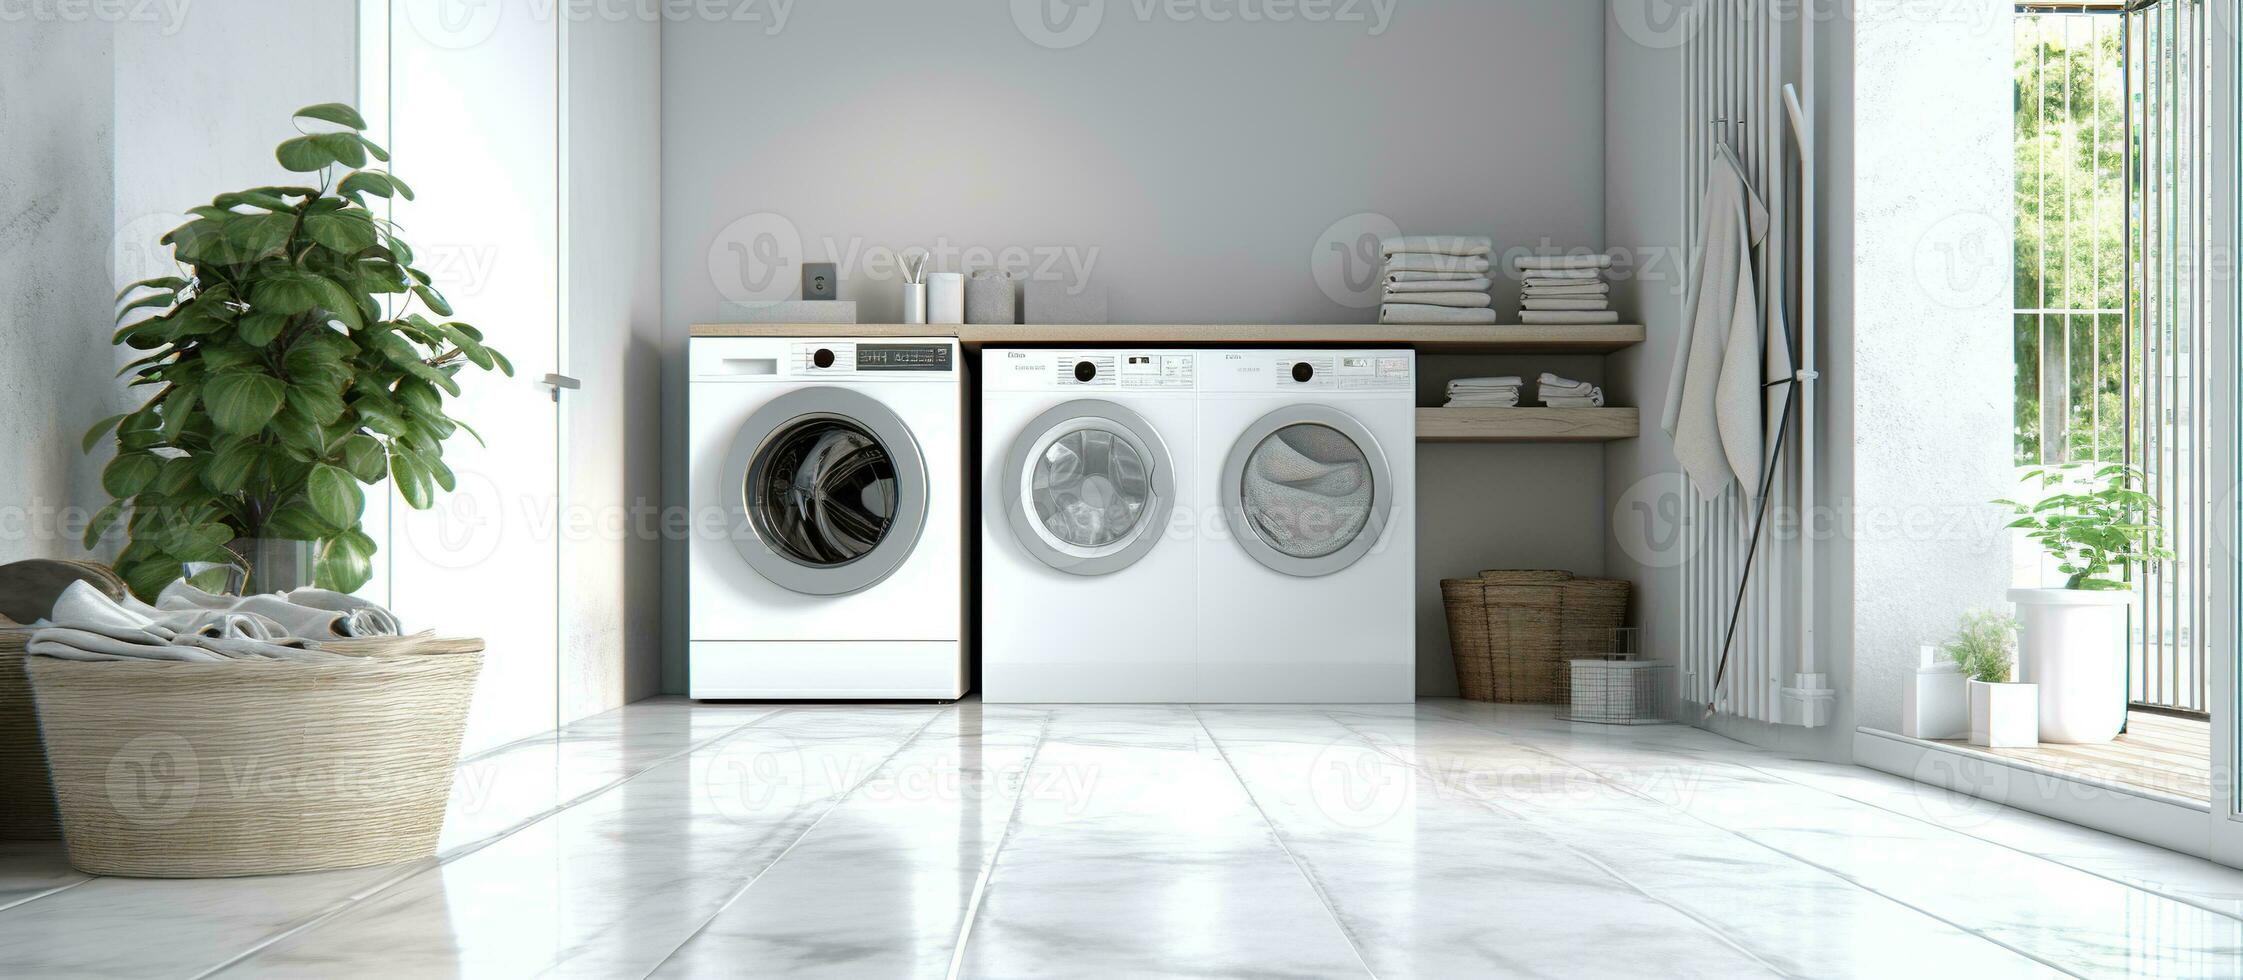 blanco borroso hogar lavandería habitación con moderno Lavado máquina foto